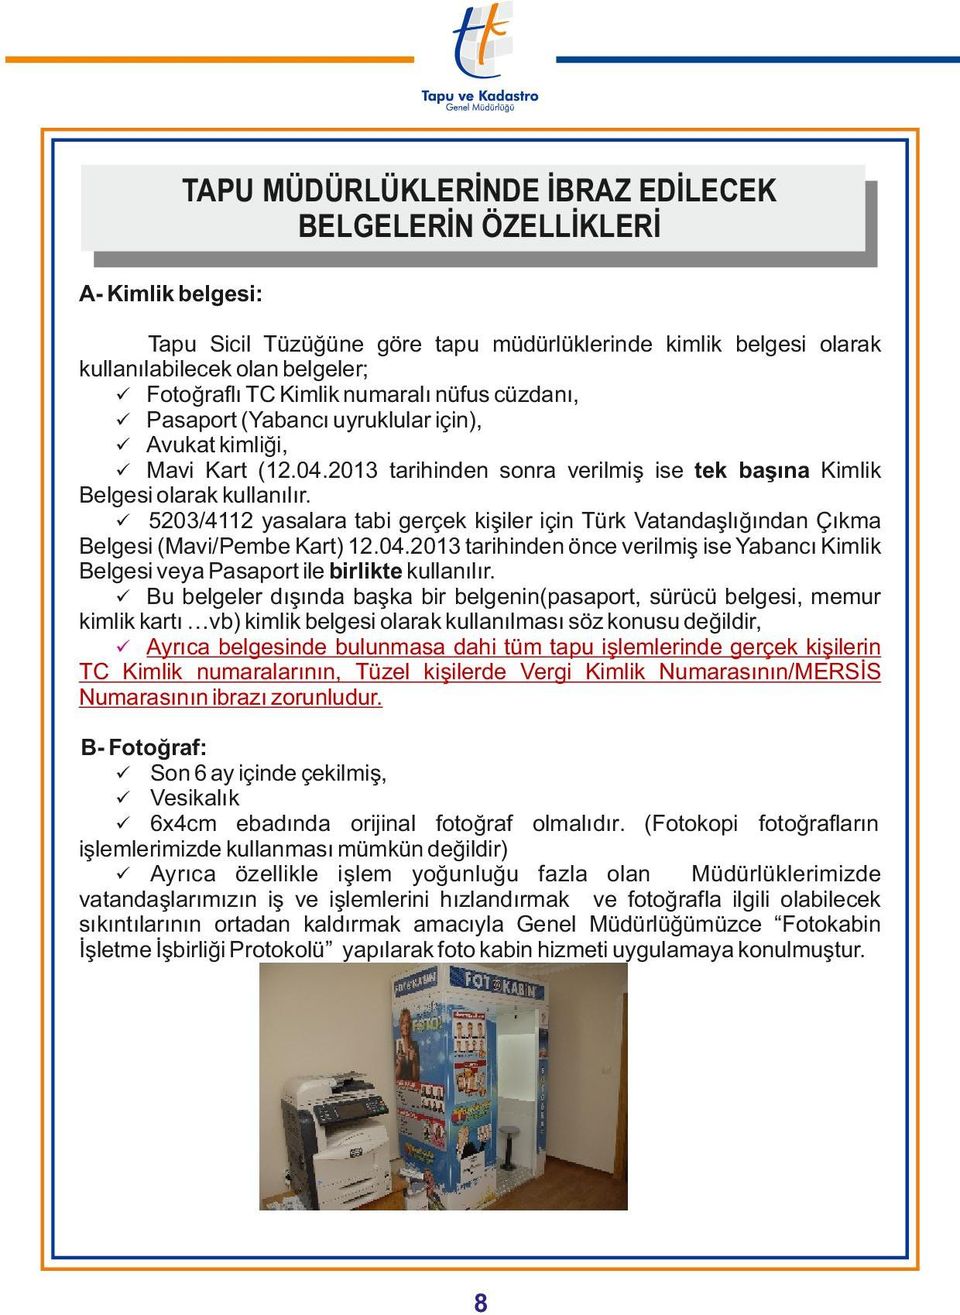 ü 5203/4112 yasalara tabi gerçek kişiler için Türk Vatandaşlığından Çıkma Belgesi (Mavi/Pembe Kart) 12.04.